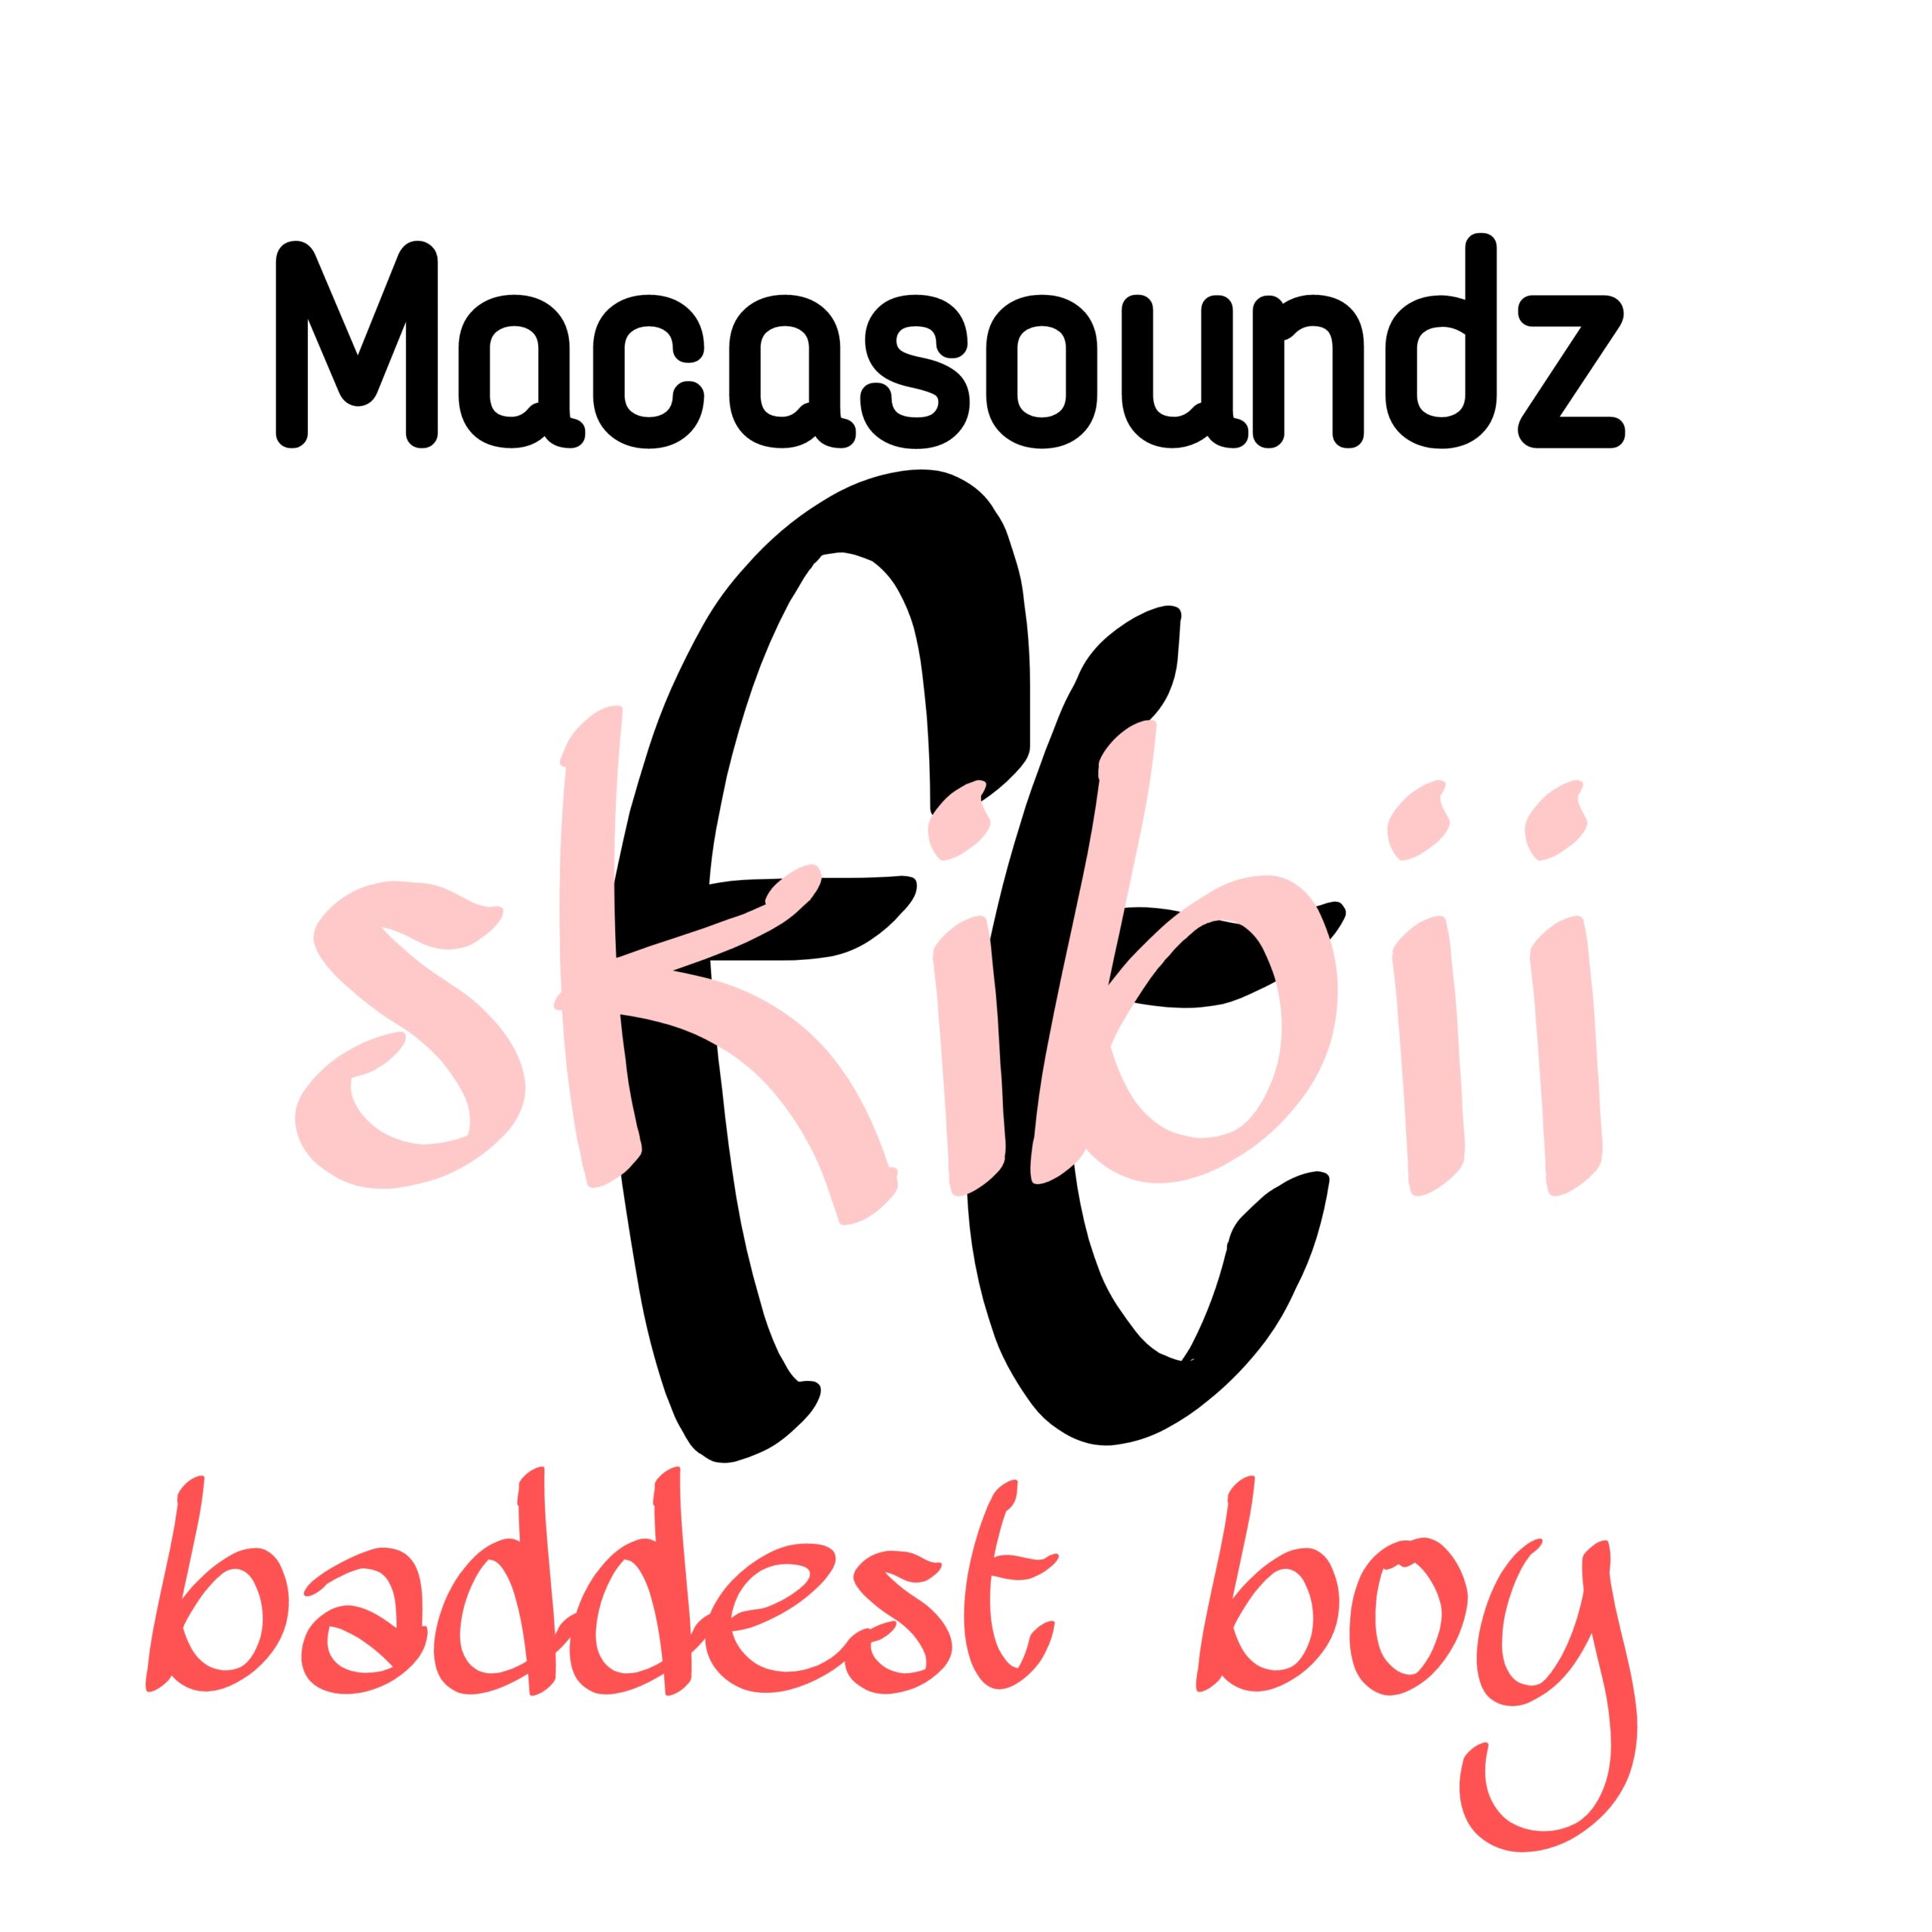 Music : Macasoundz – Ft. Skibii –  Baddest Boy Cover (Wizkid Version)